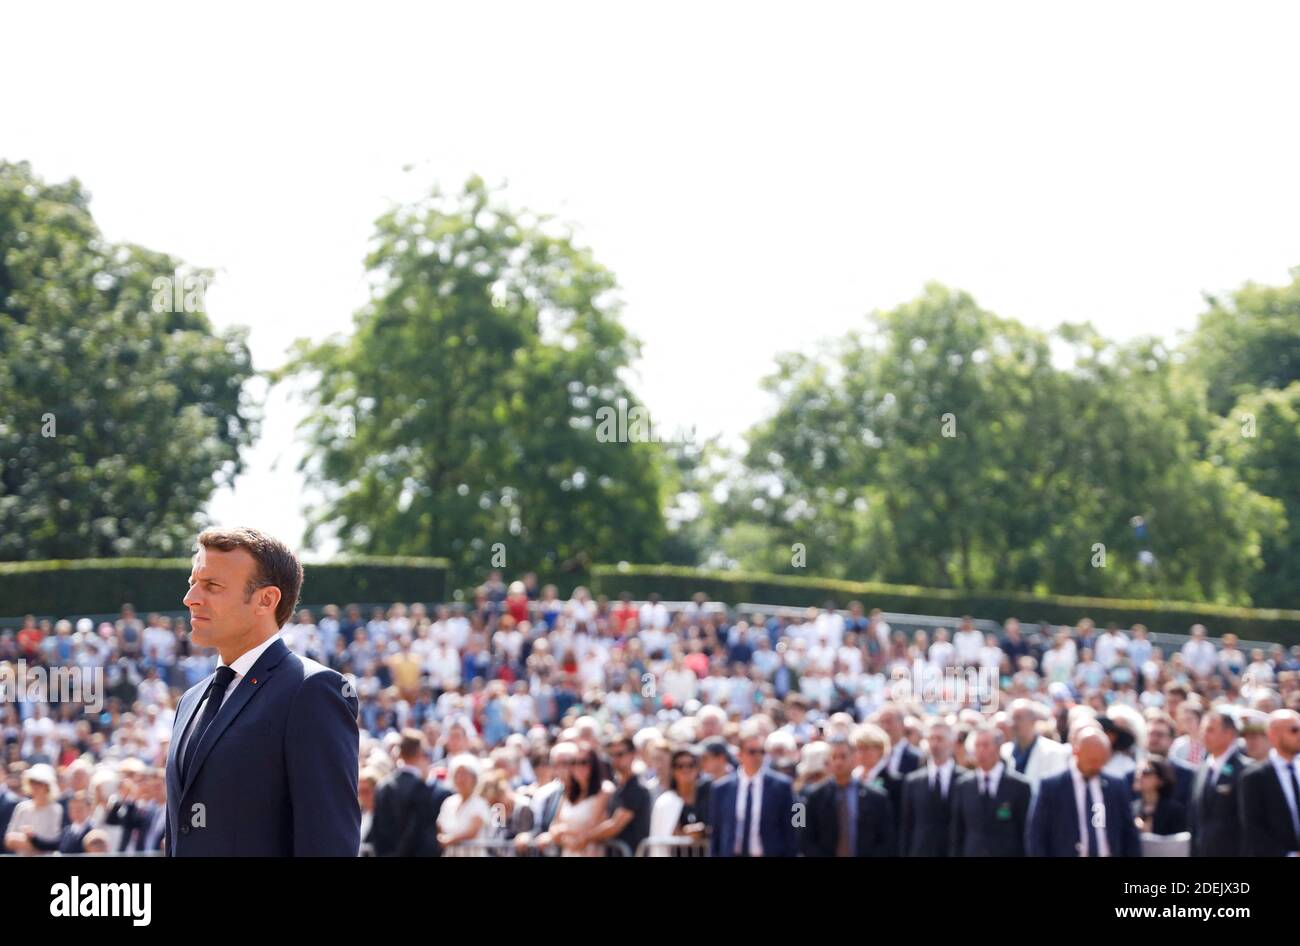 Il presidente francese Emmanuel Macron partecipa a una cerimonia commemorativa dell'appello del generale Charles De Gaulle del 1940 giugno per la resistenza francese contro la Germania nazista, al Monumento Nazionale di Mont Valerien a Suresnes, alla periferia di Parigi, il 18 giugno 2019. Foto di Hamilton/Pool/ABACAPRESS.COM Foto Stock